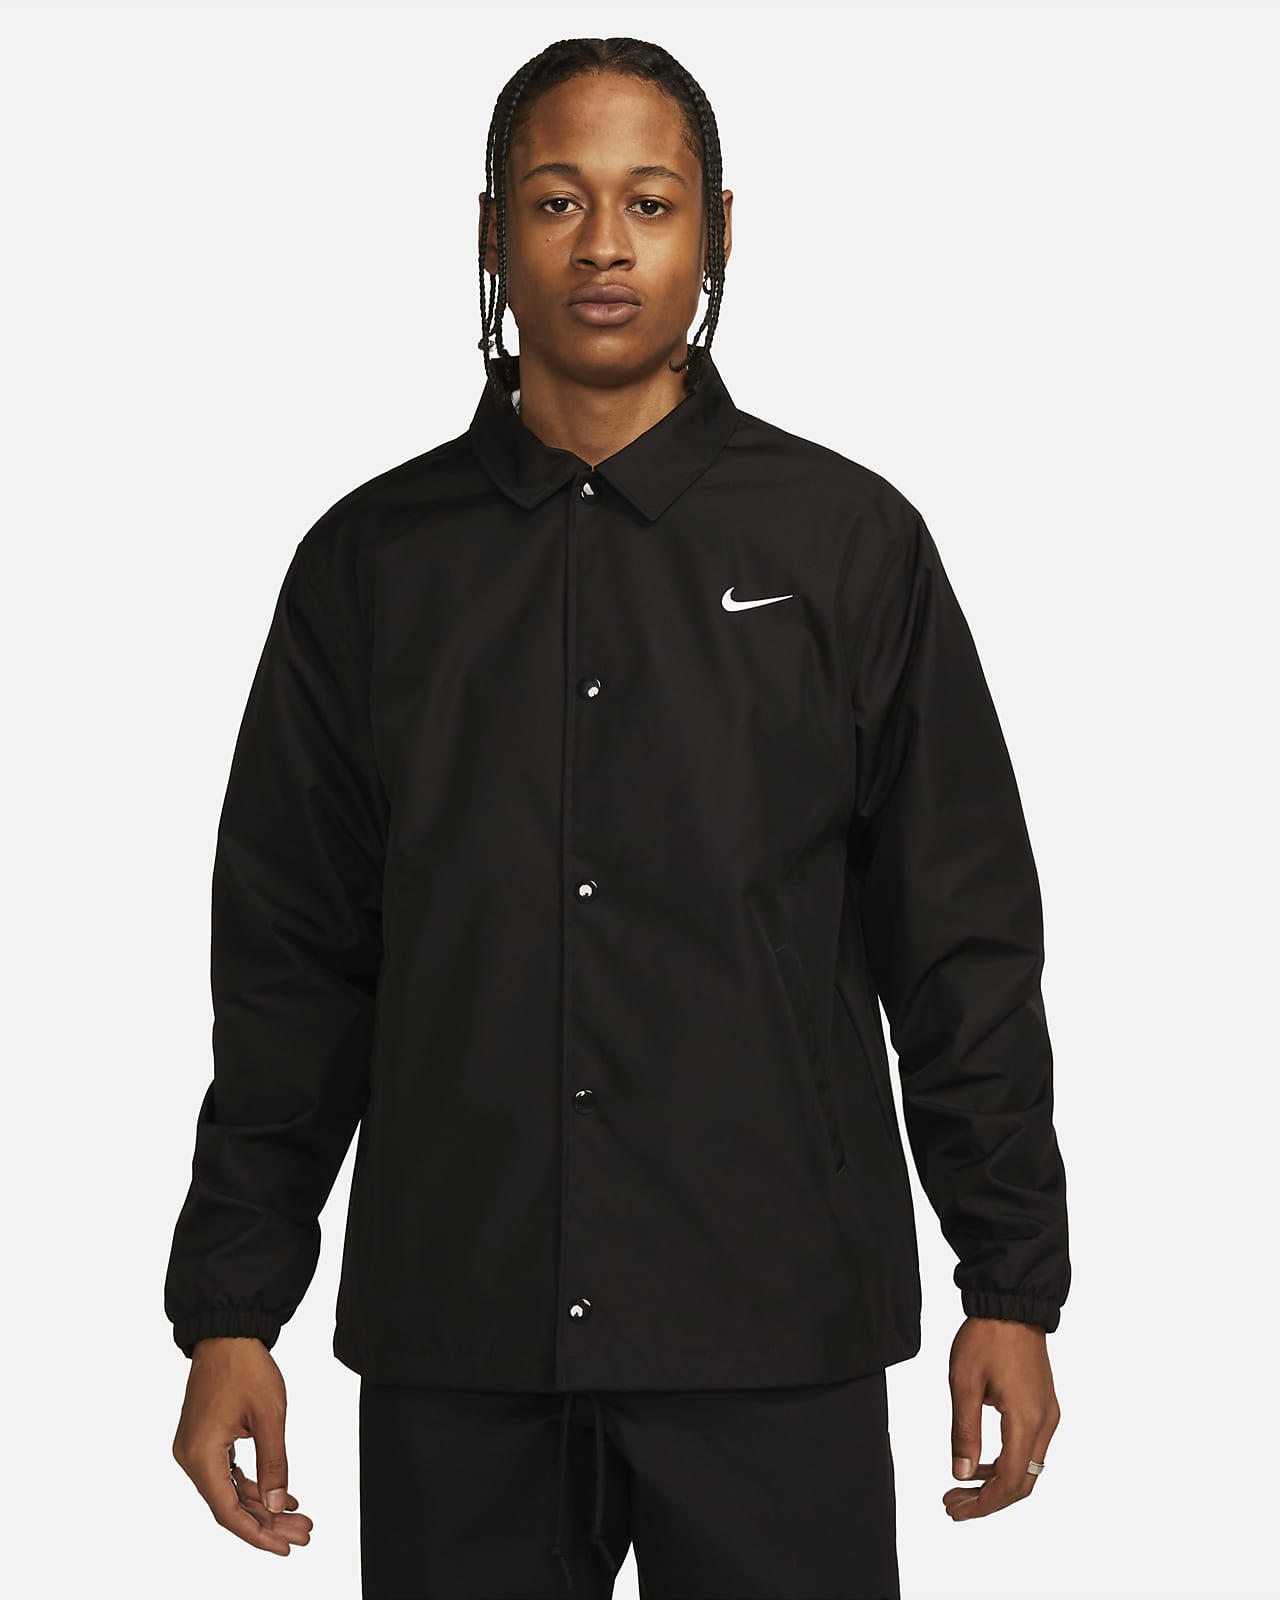 Men's Lined Jacket. Nike.com